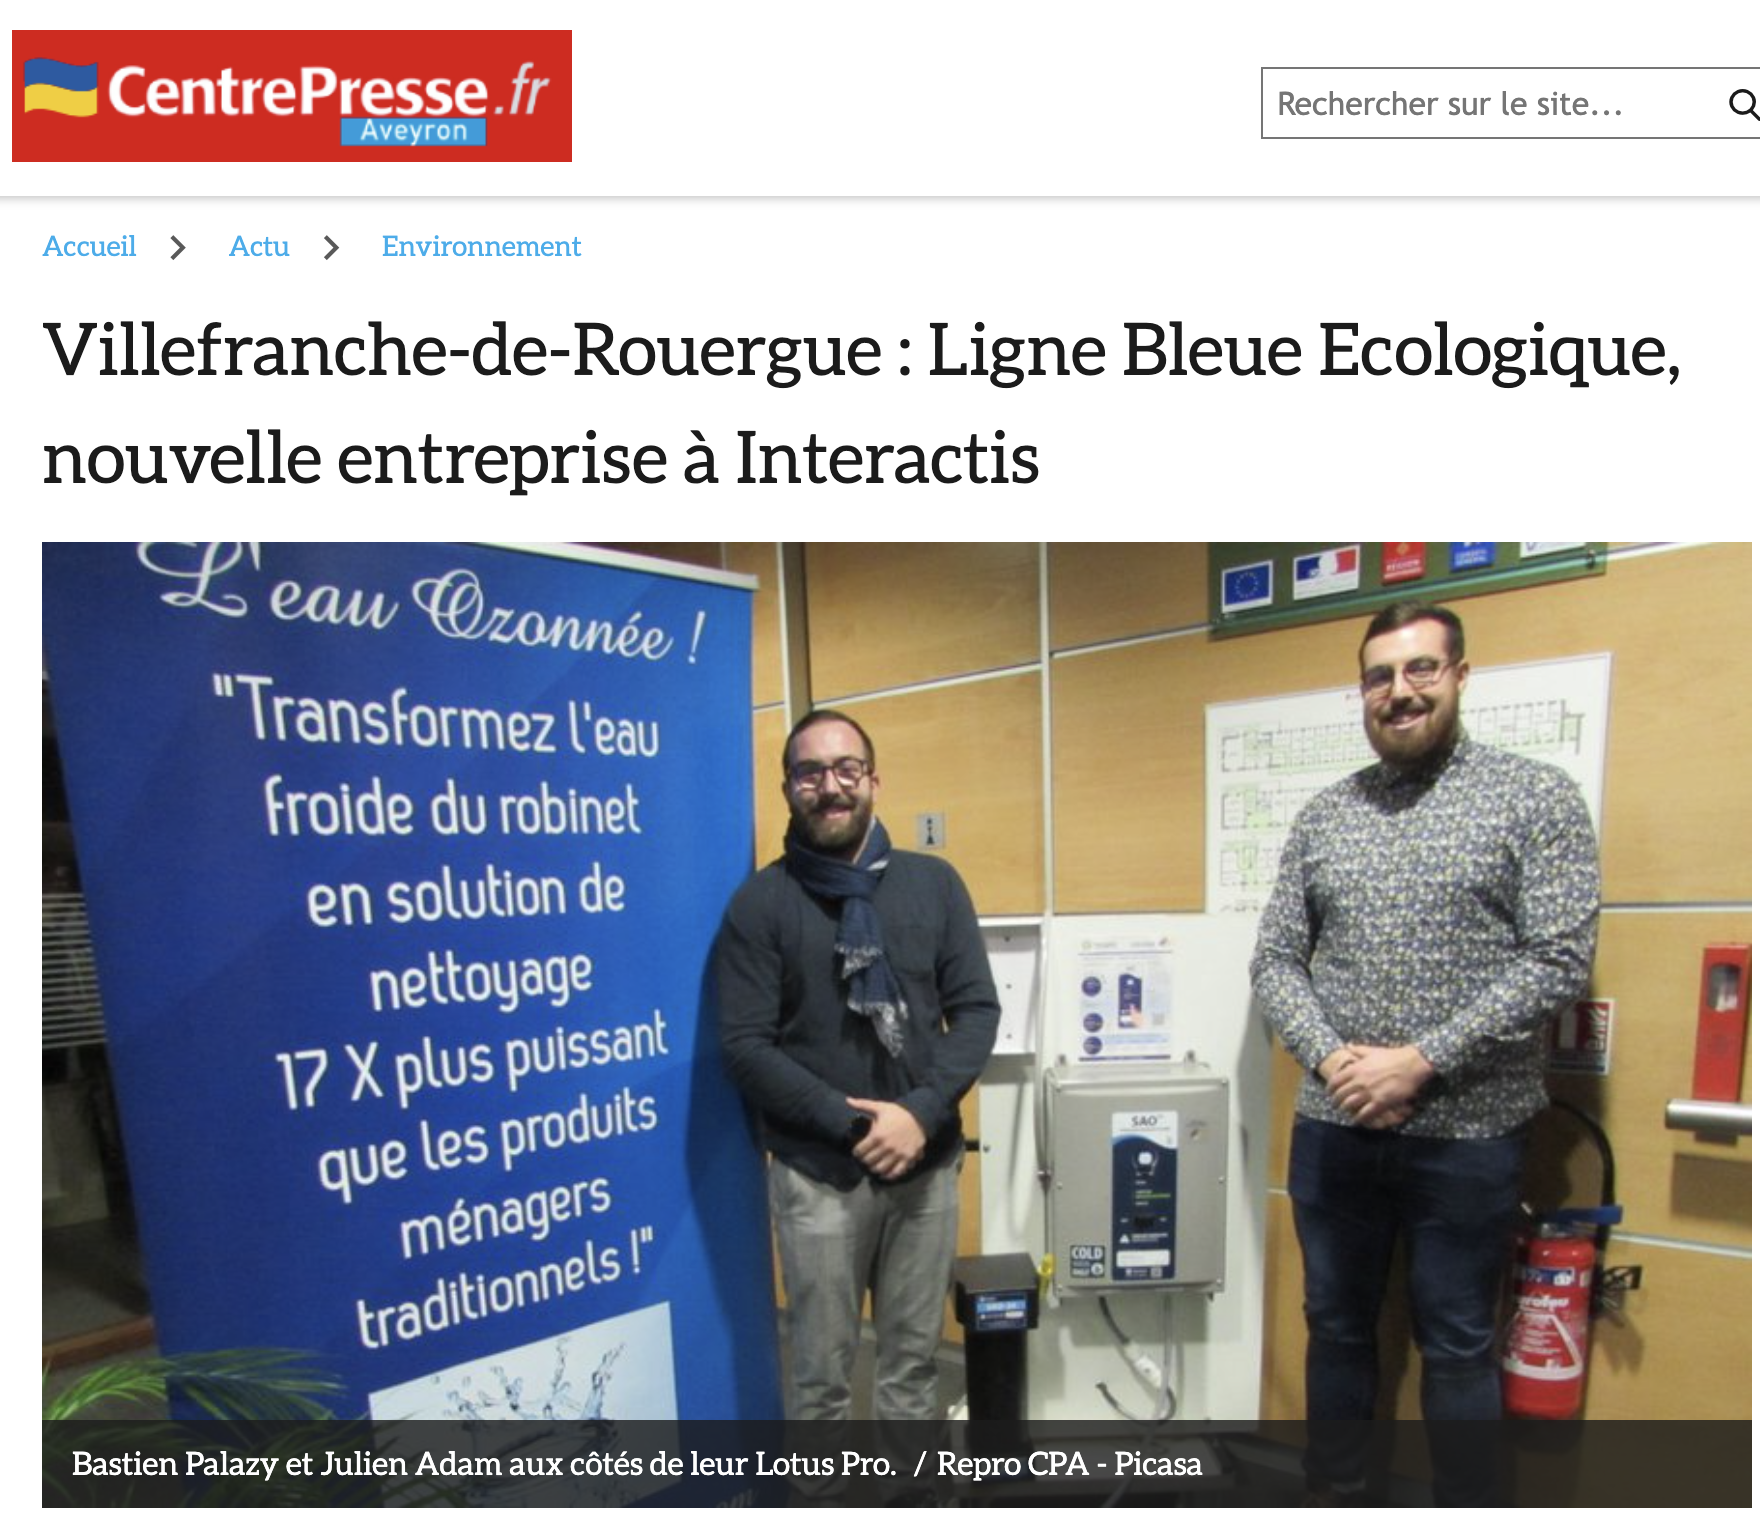 You are currently viewing Villefranche-de-Rouergue : Ligne Bleue Ecologique, nouvelle entreprise à Interactis